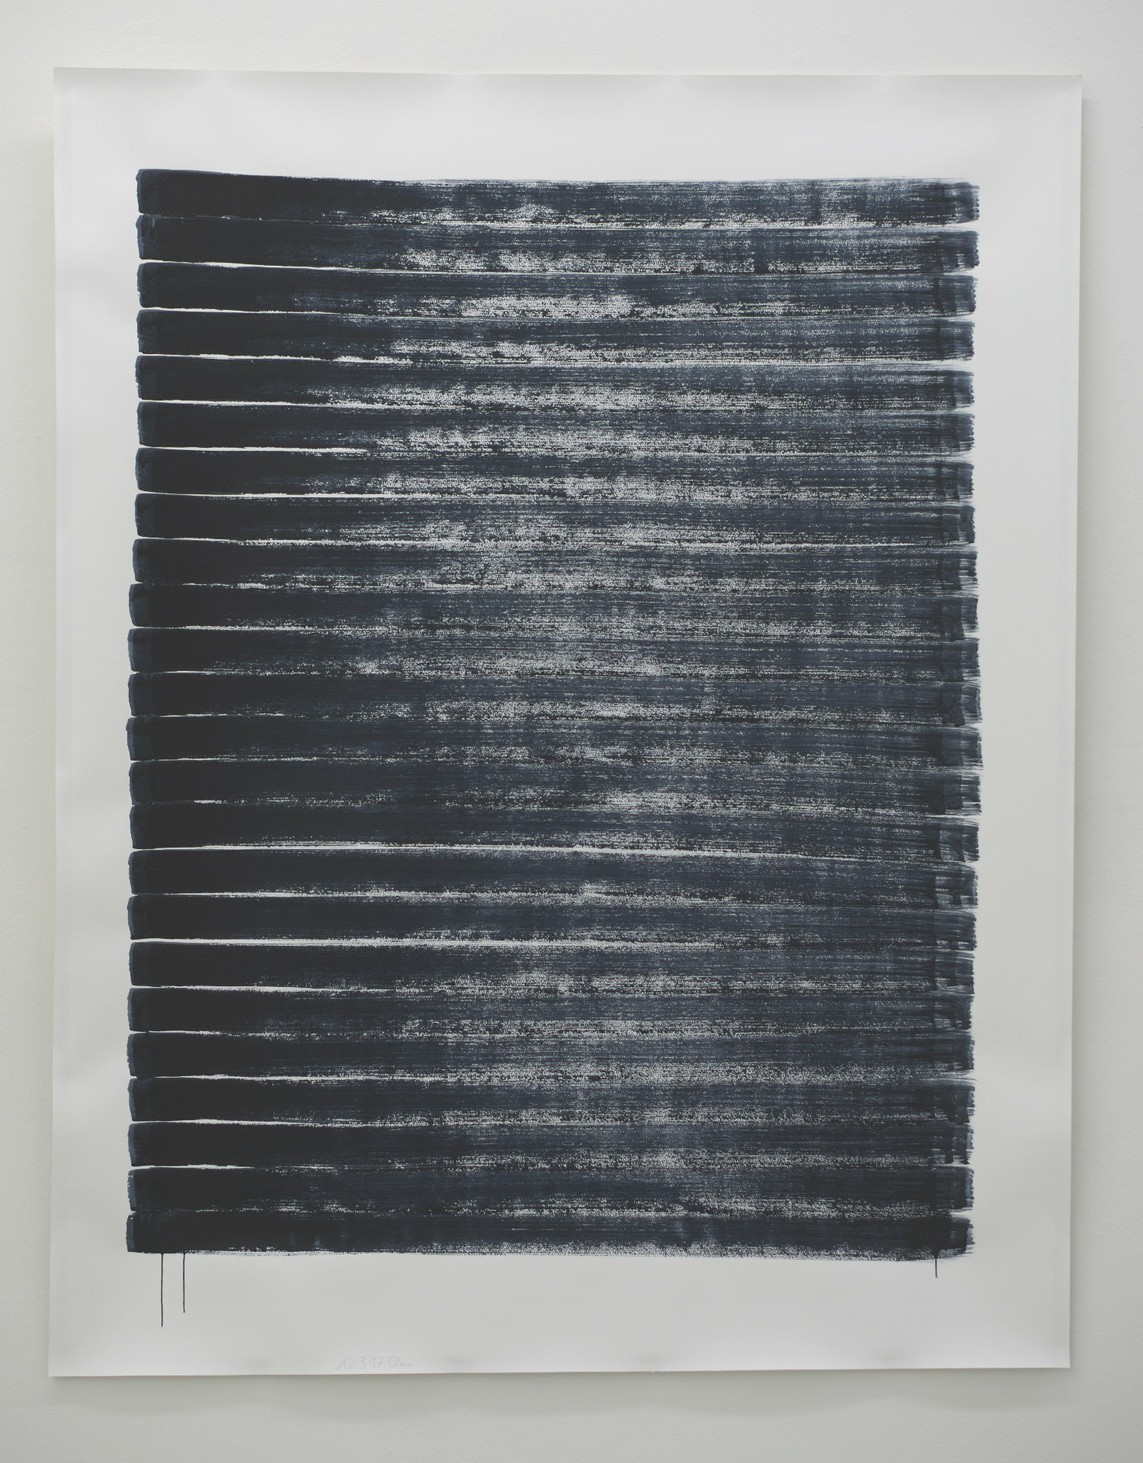 o.T. (12.3.17), Aquarell auf Papier, 2017, 193 x 152 cm 